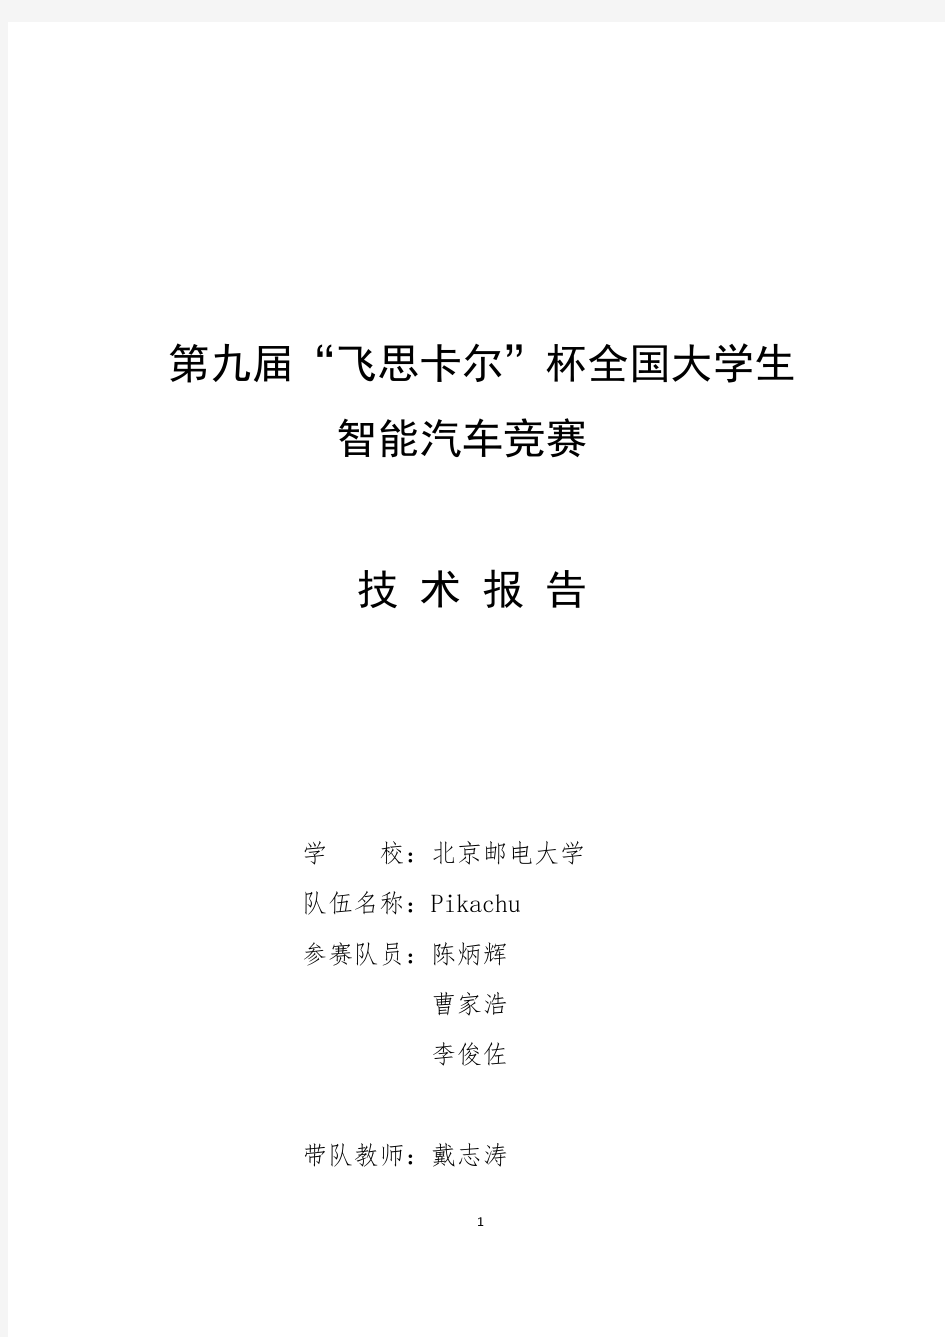 光电组-北京邮电大学-pikachu-智能车技术报告